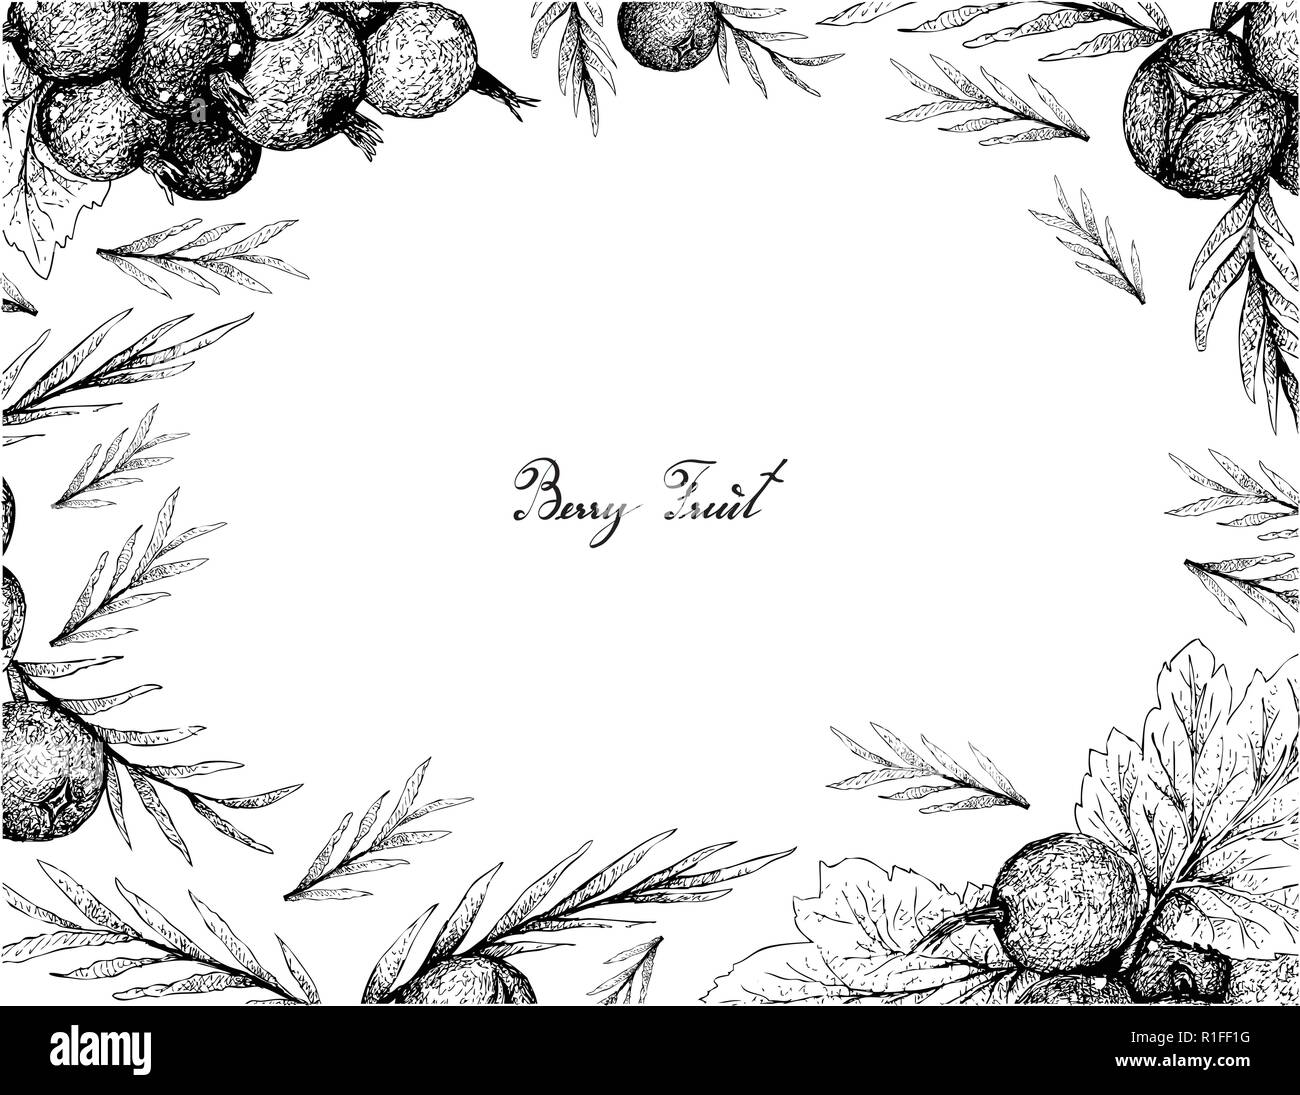 Beerenfrucht, Illustration von Hand gezeichnete Skizze von Jostaberries und Wacholderbeeren isoliert auf weißem Hintergrund. Stock Vektor